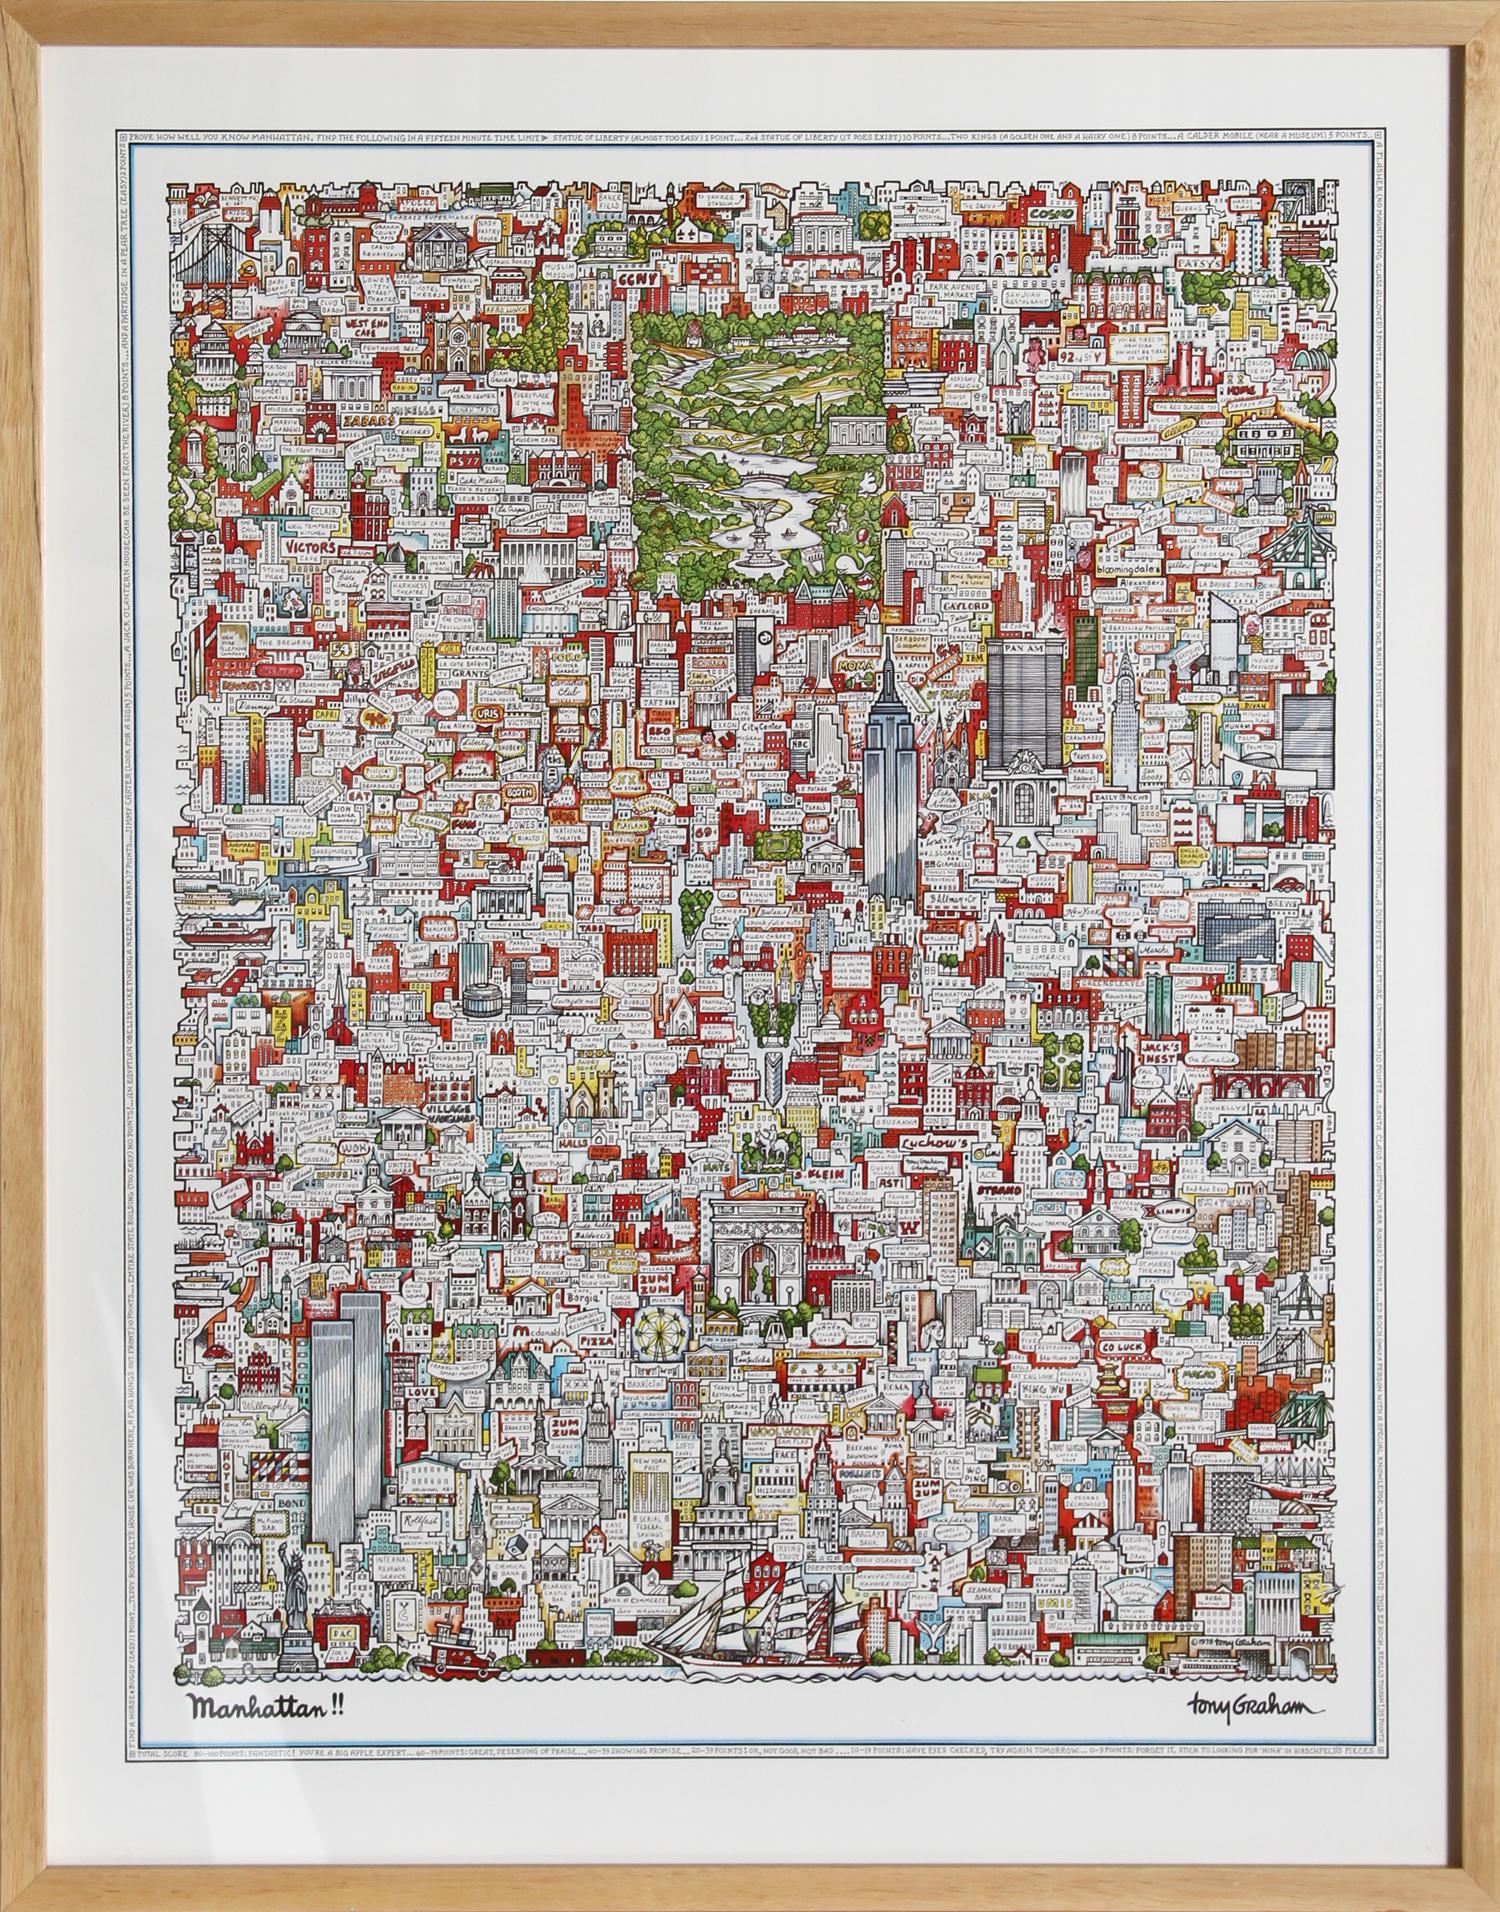 Tony Graham est un artiste graphique connu pour ses dessins et ses gravures de la ville de New York. "Manhattan" est l'image la plus emblématique et la plus collectionnée de l'artiste, publiée en 1978. Joliment encadré.

Manhattan !! de Tony Graham,